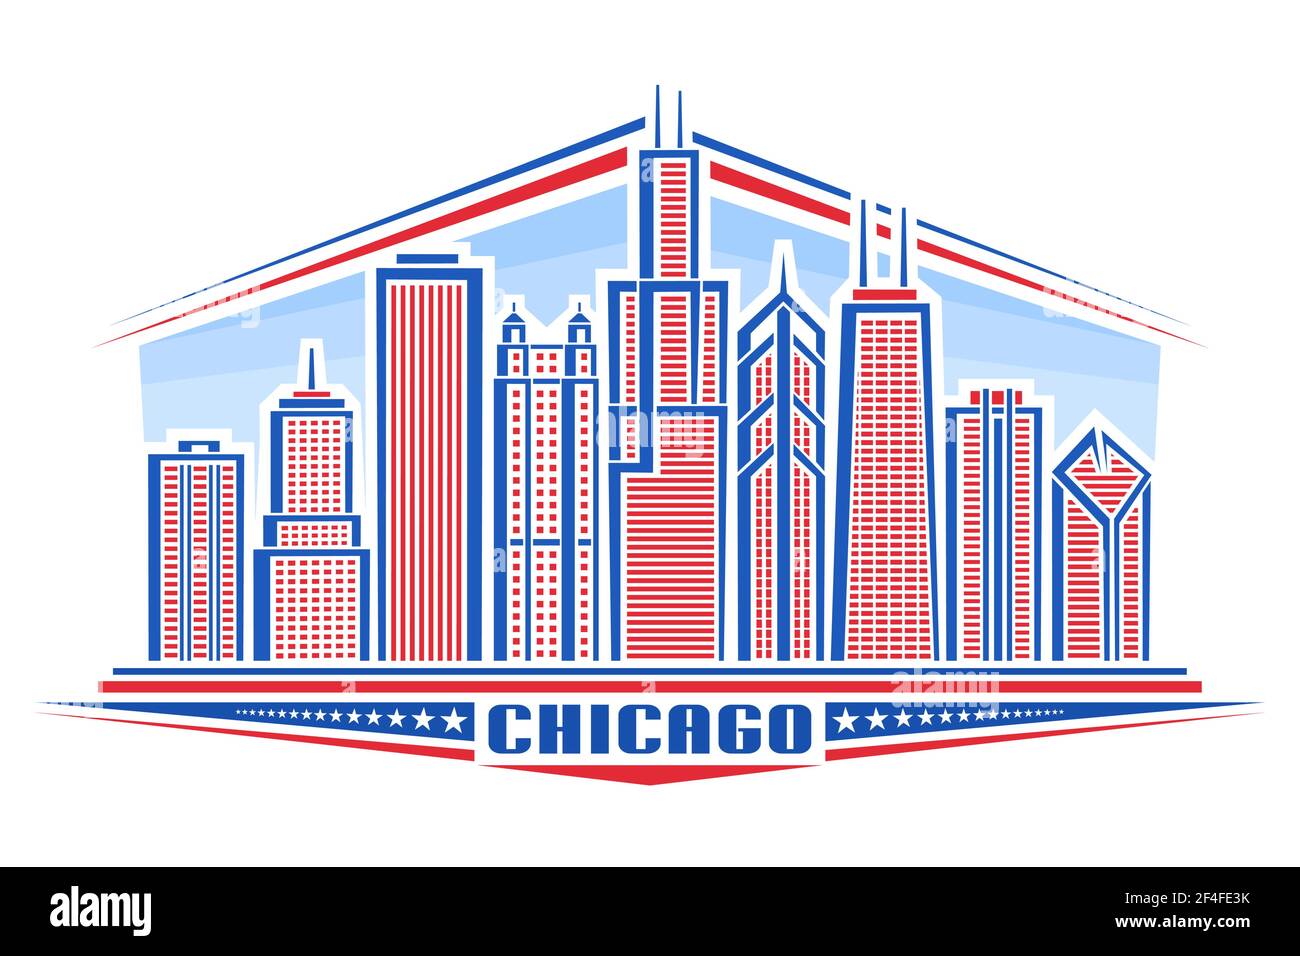 Vektor-Illustration von Chicago City, horizontales Plakat mit Linie Art Design chicago Stadtbild auf Tageshintergrund, modernes Panorama-Konzept mit einzigartigen Stock Vektor